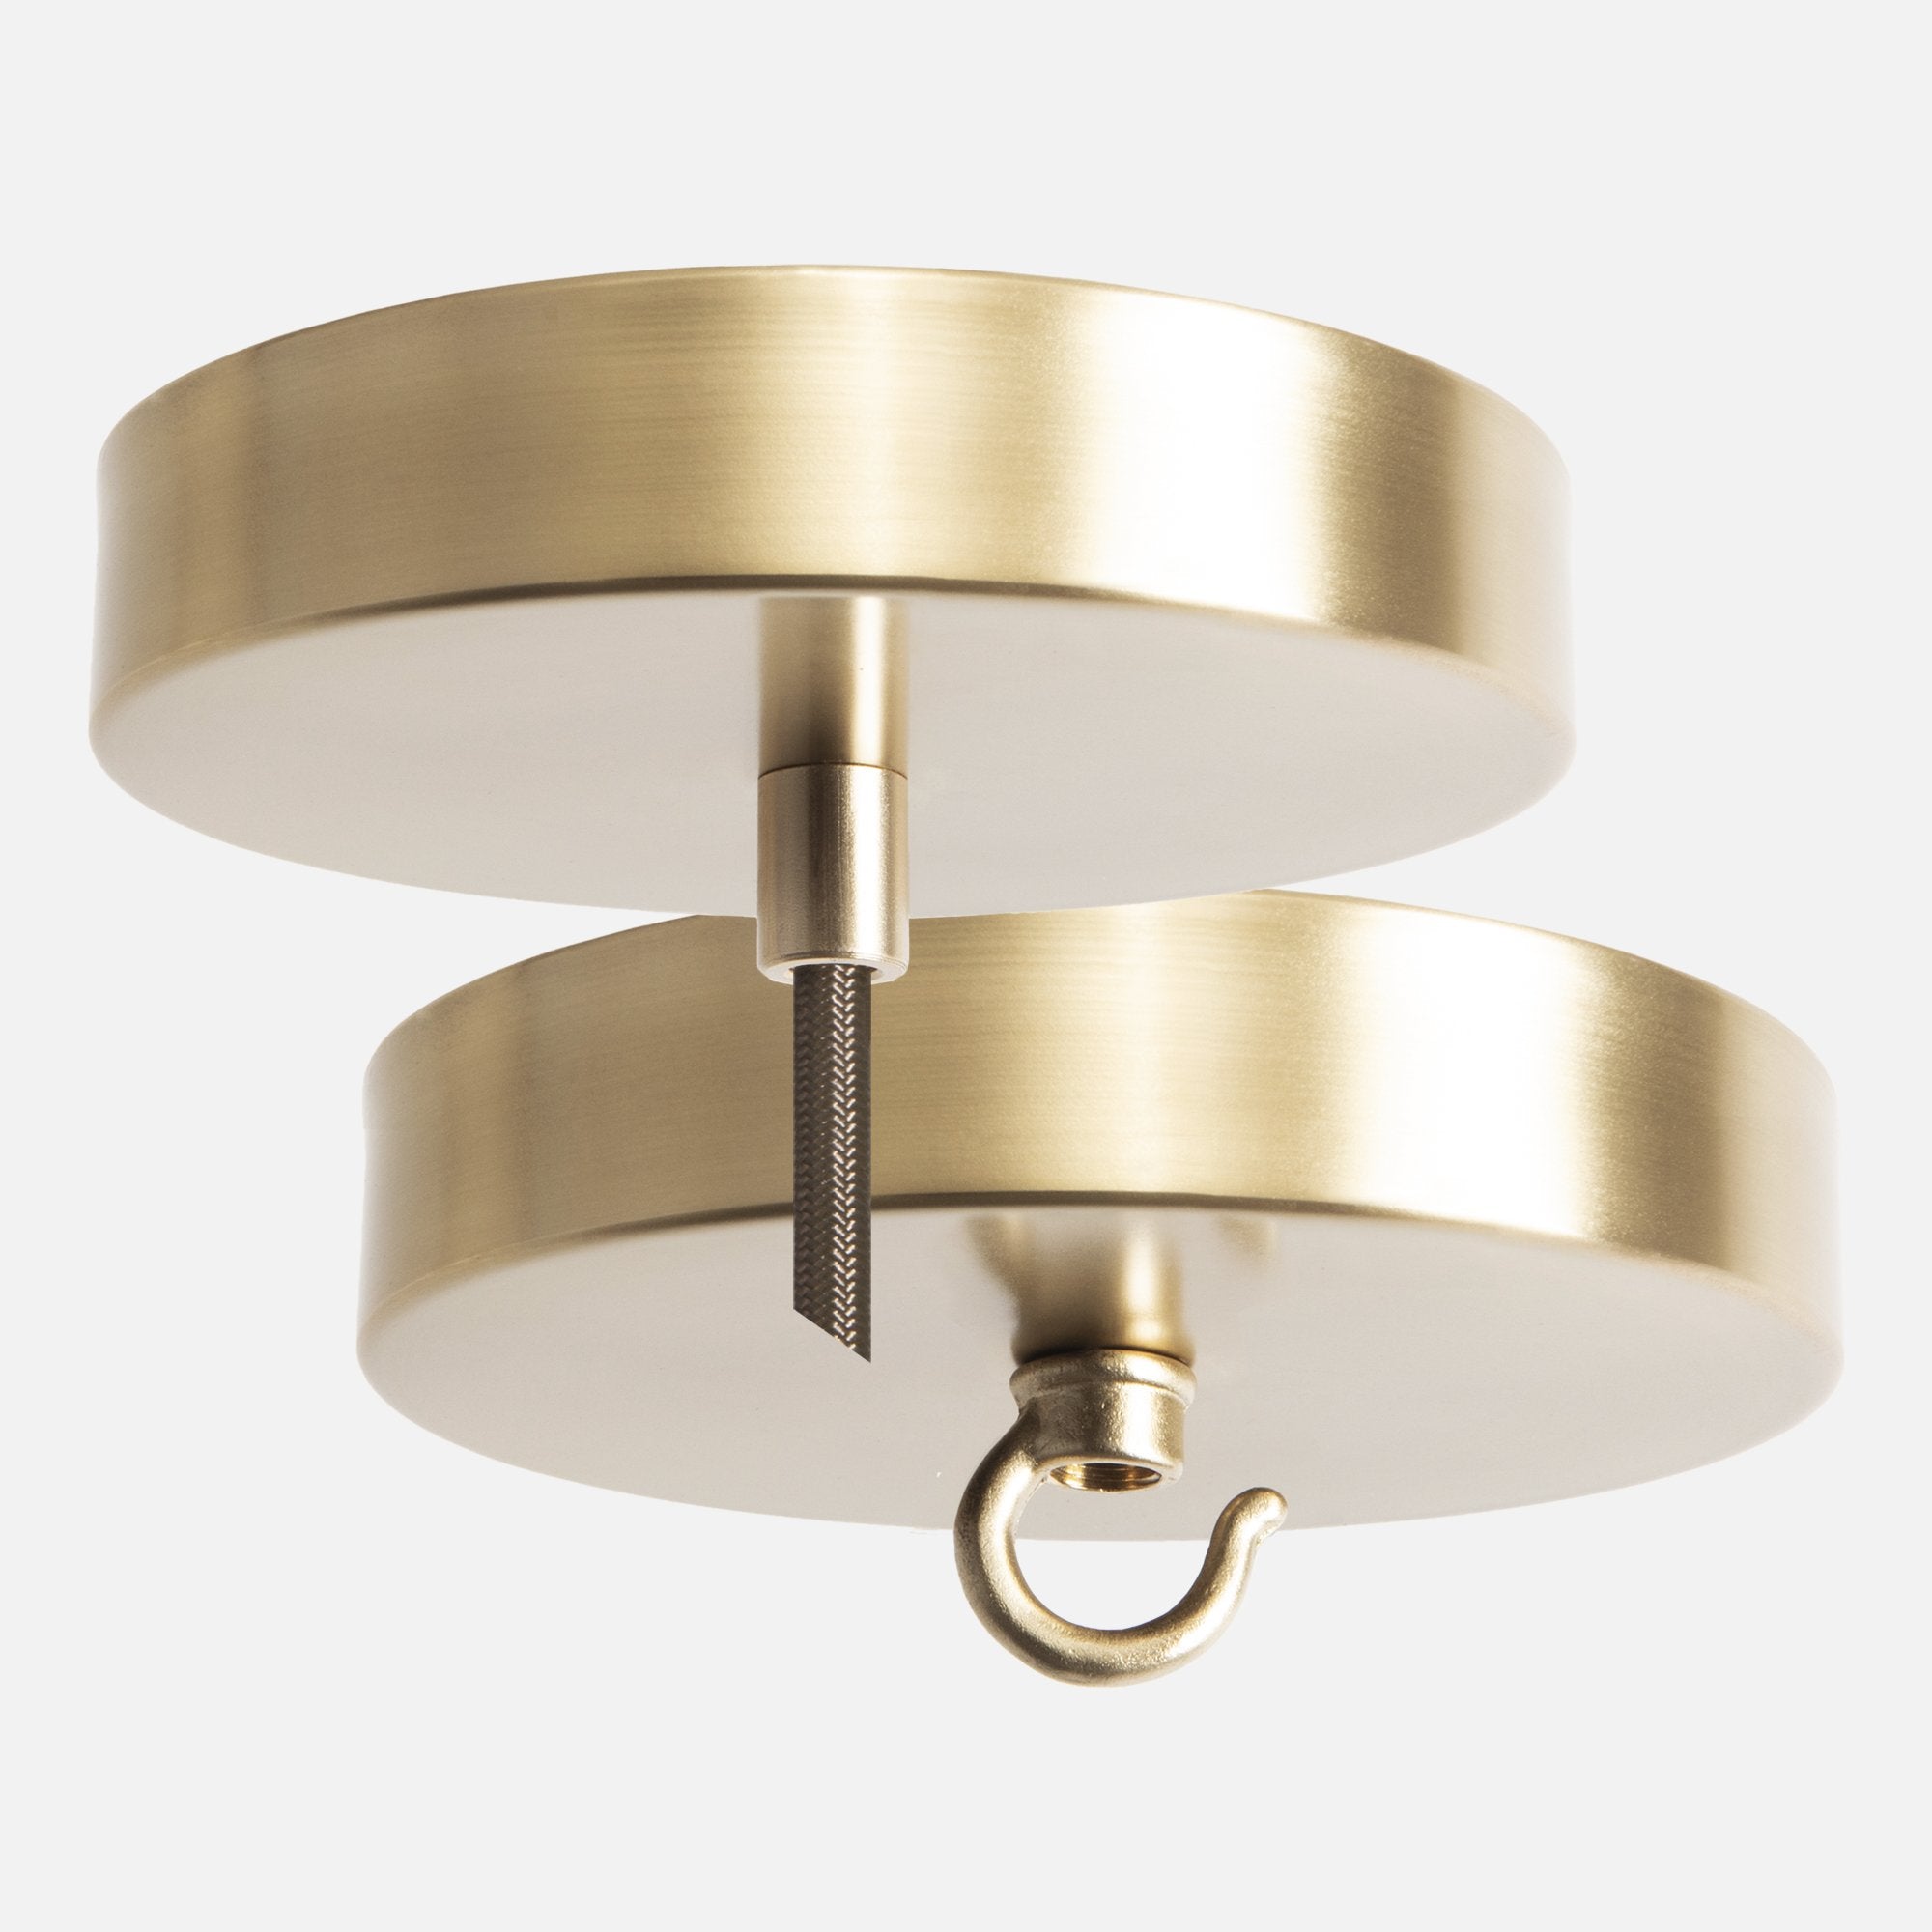 Satin Brass Ceiling Canopy Kit for Pendant Light or Chandelier